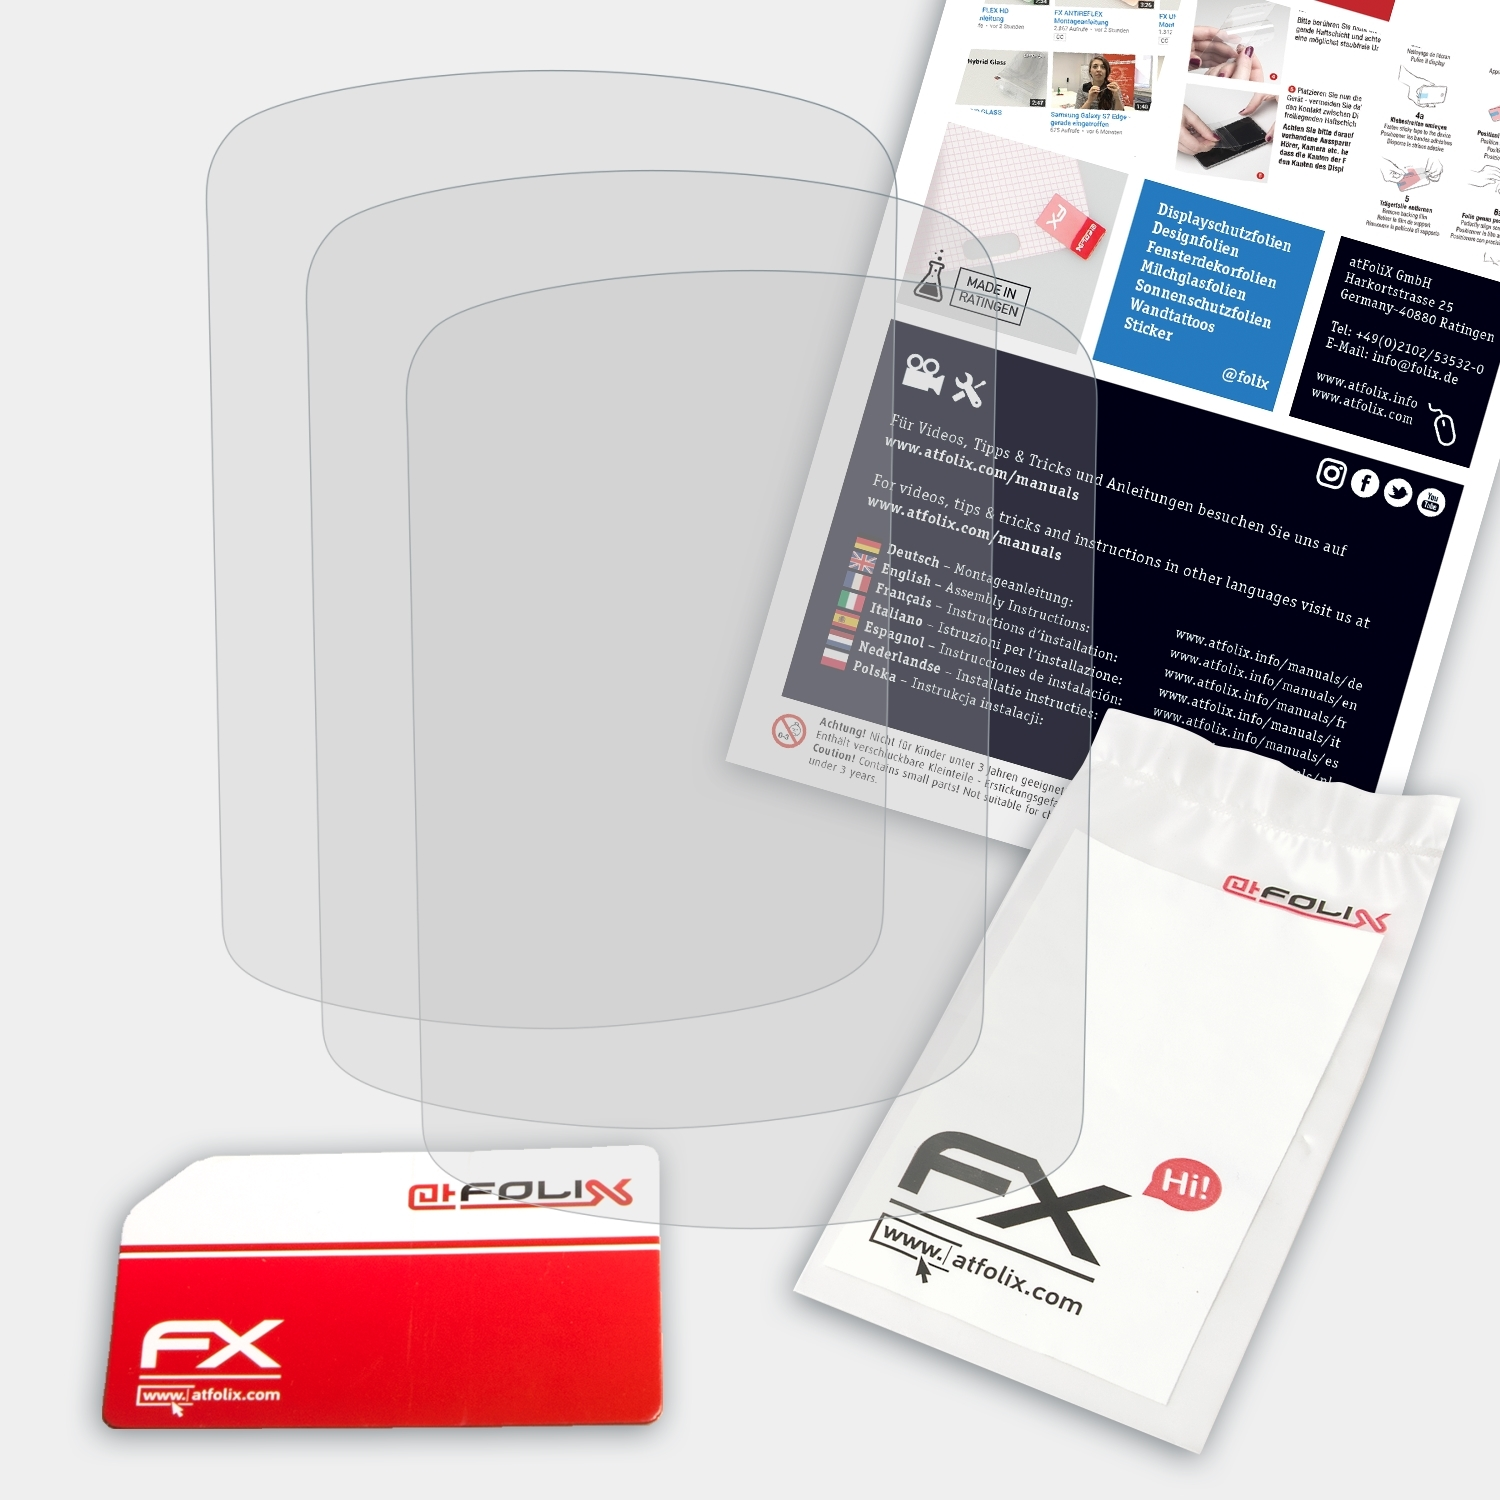 CX) Vista FX-Antireflex Etrex Displayschutz(für 3x ATFOLIX Garmin